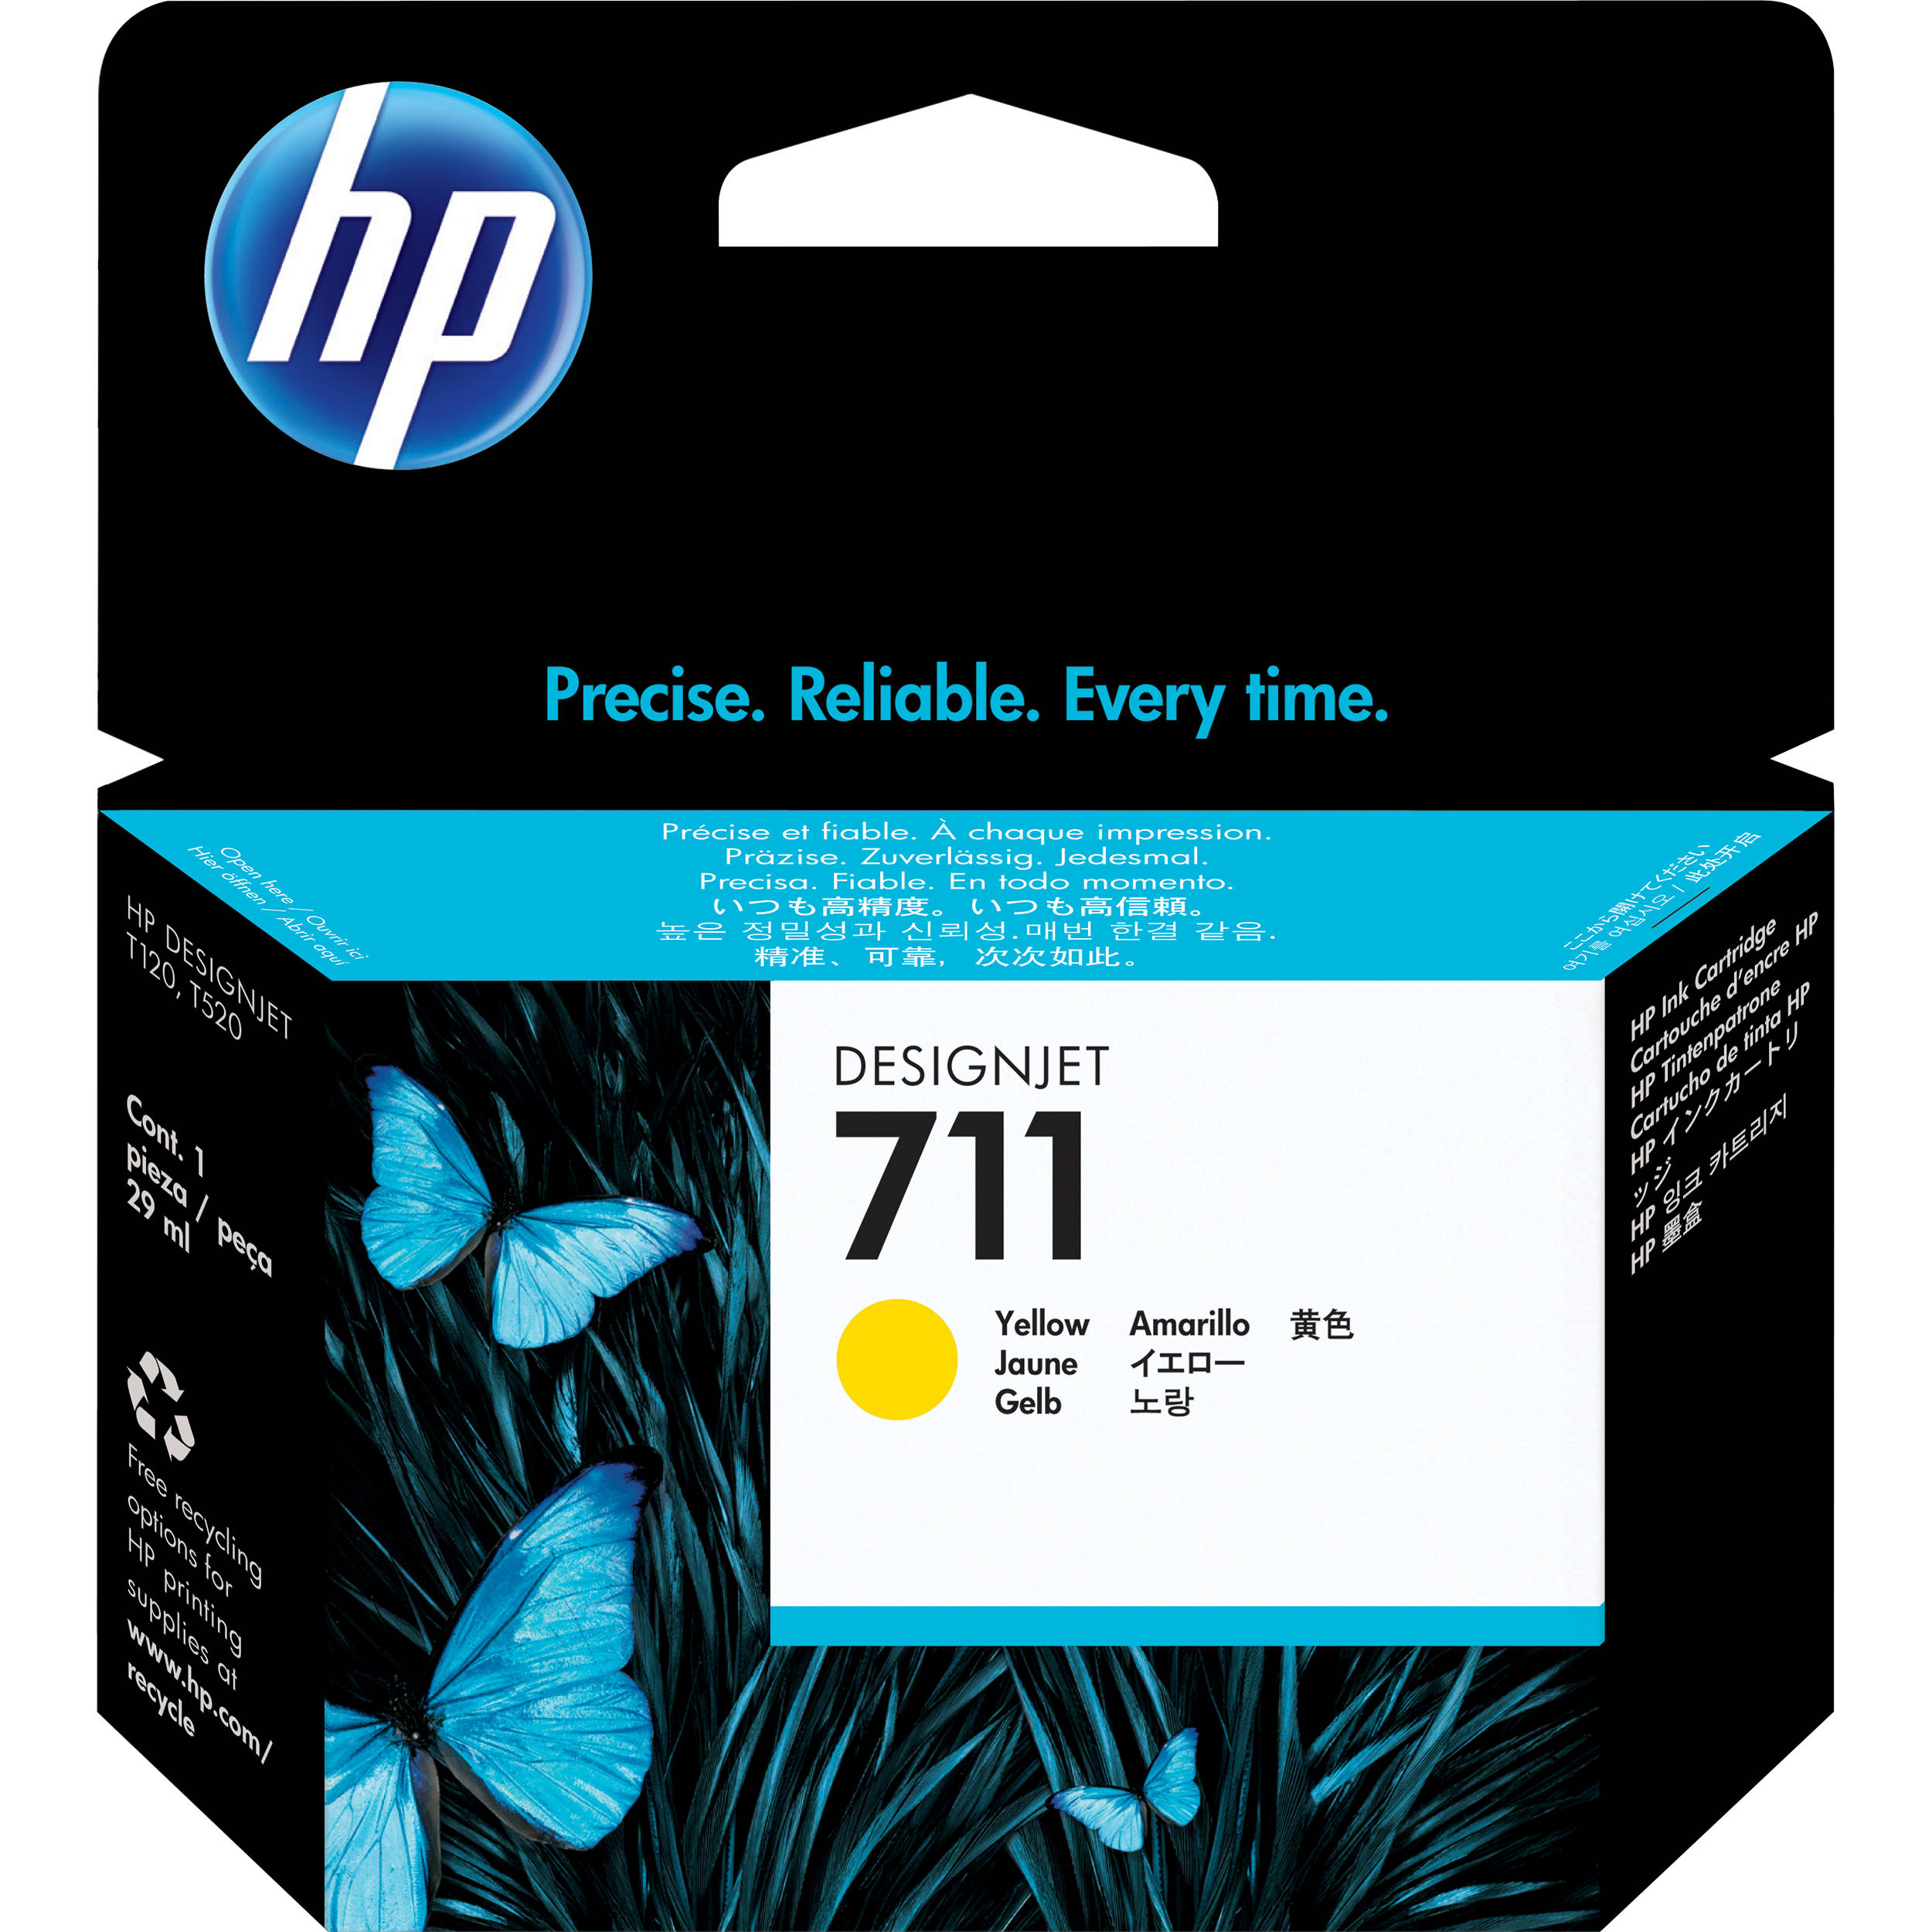 HP 711 29-ml Yellow DesignJet Ink Cartridge